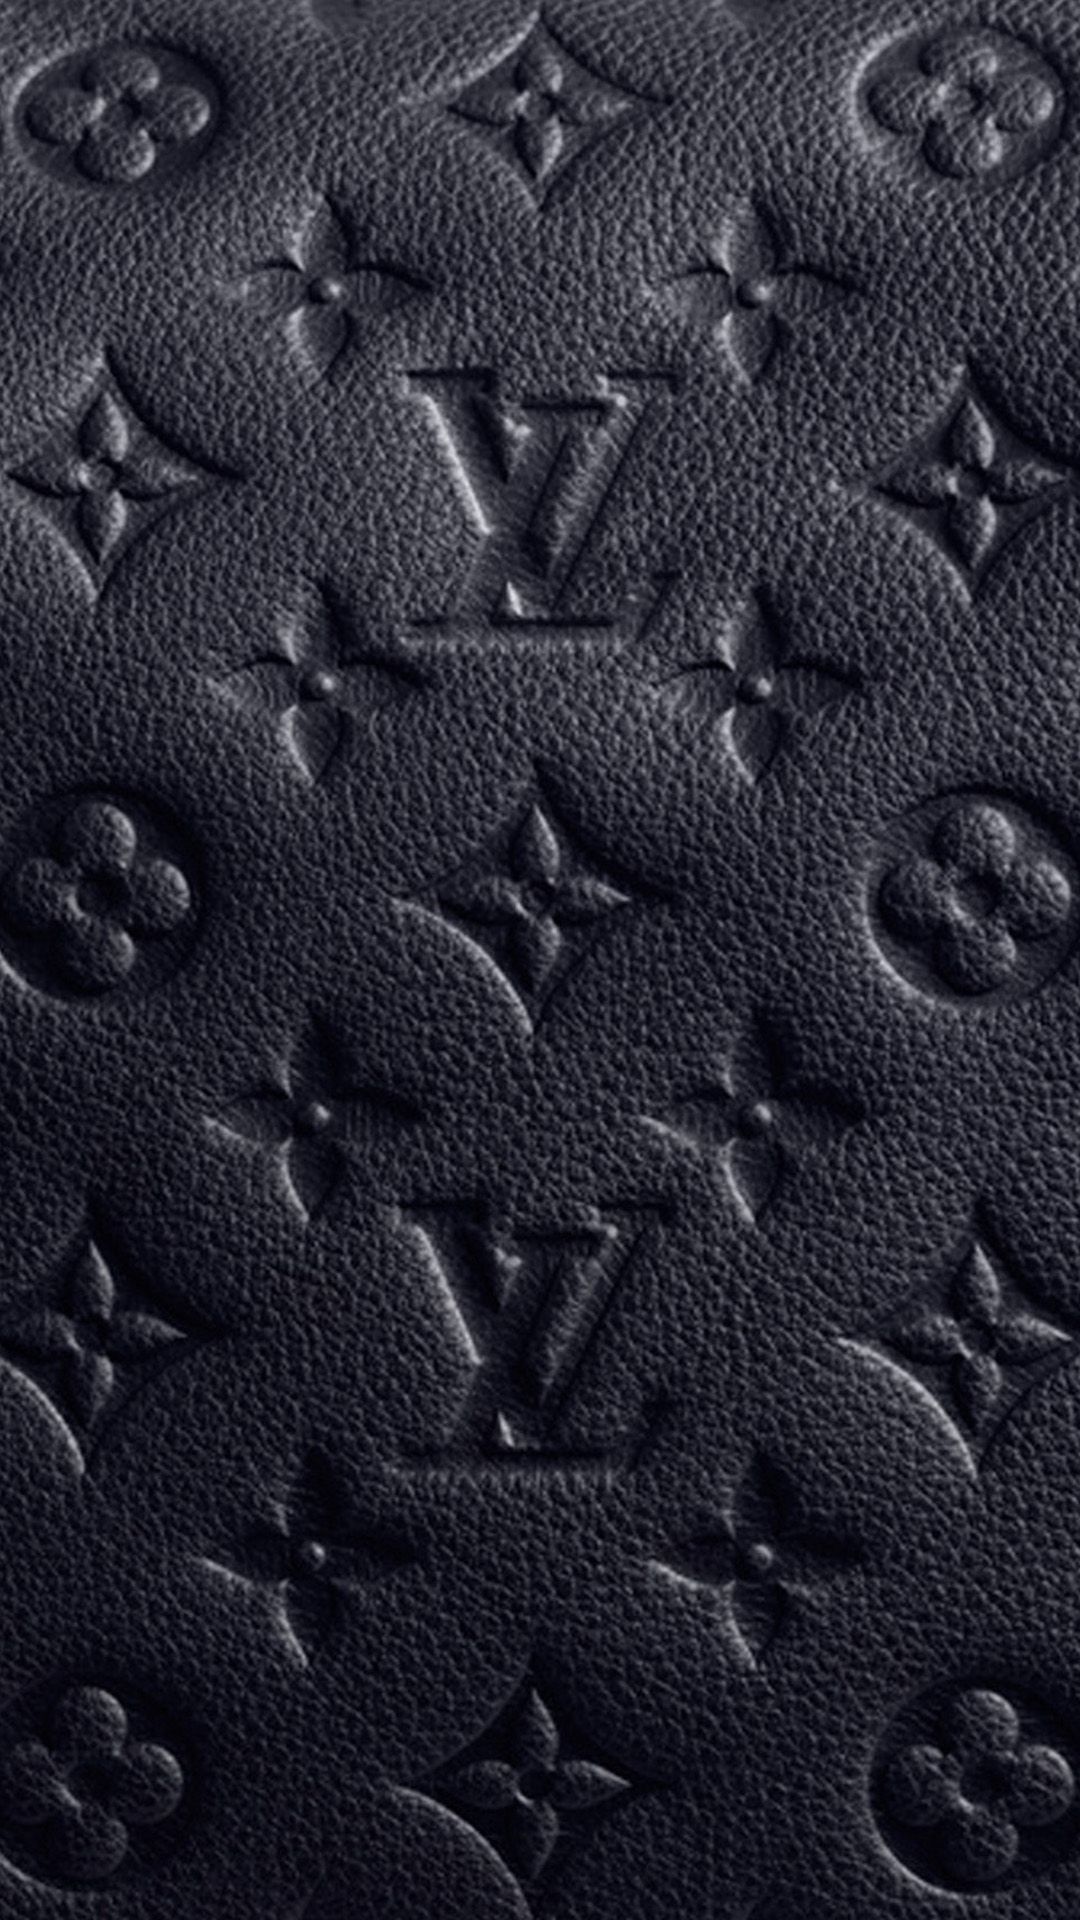 99 Hình Nền Louis Vuitton Sống Động Và Vô CùngChanh Sả